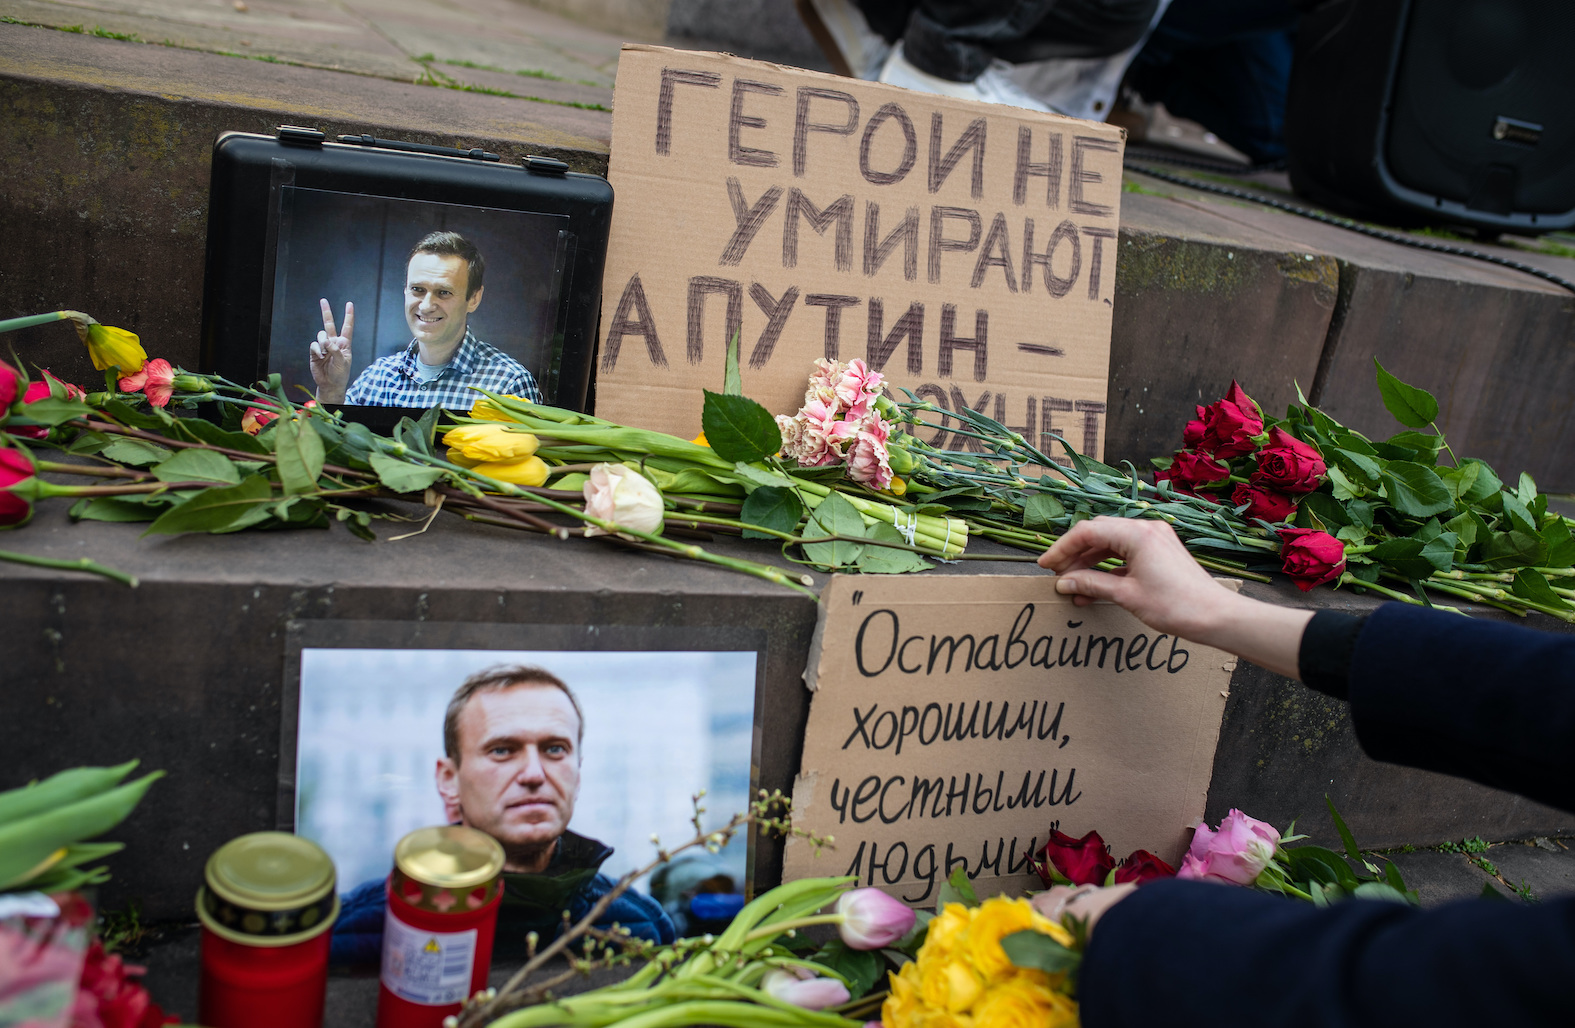 A Moscou, l'ambassadrice des Etats-Unis rend hommage à Alexeï Navalny